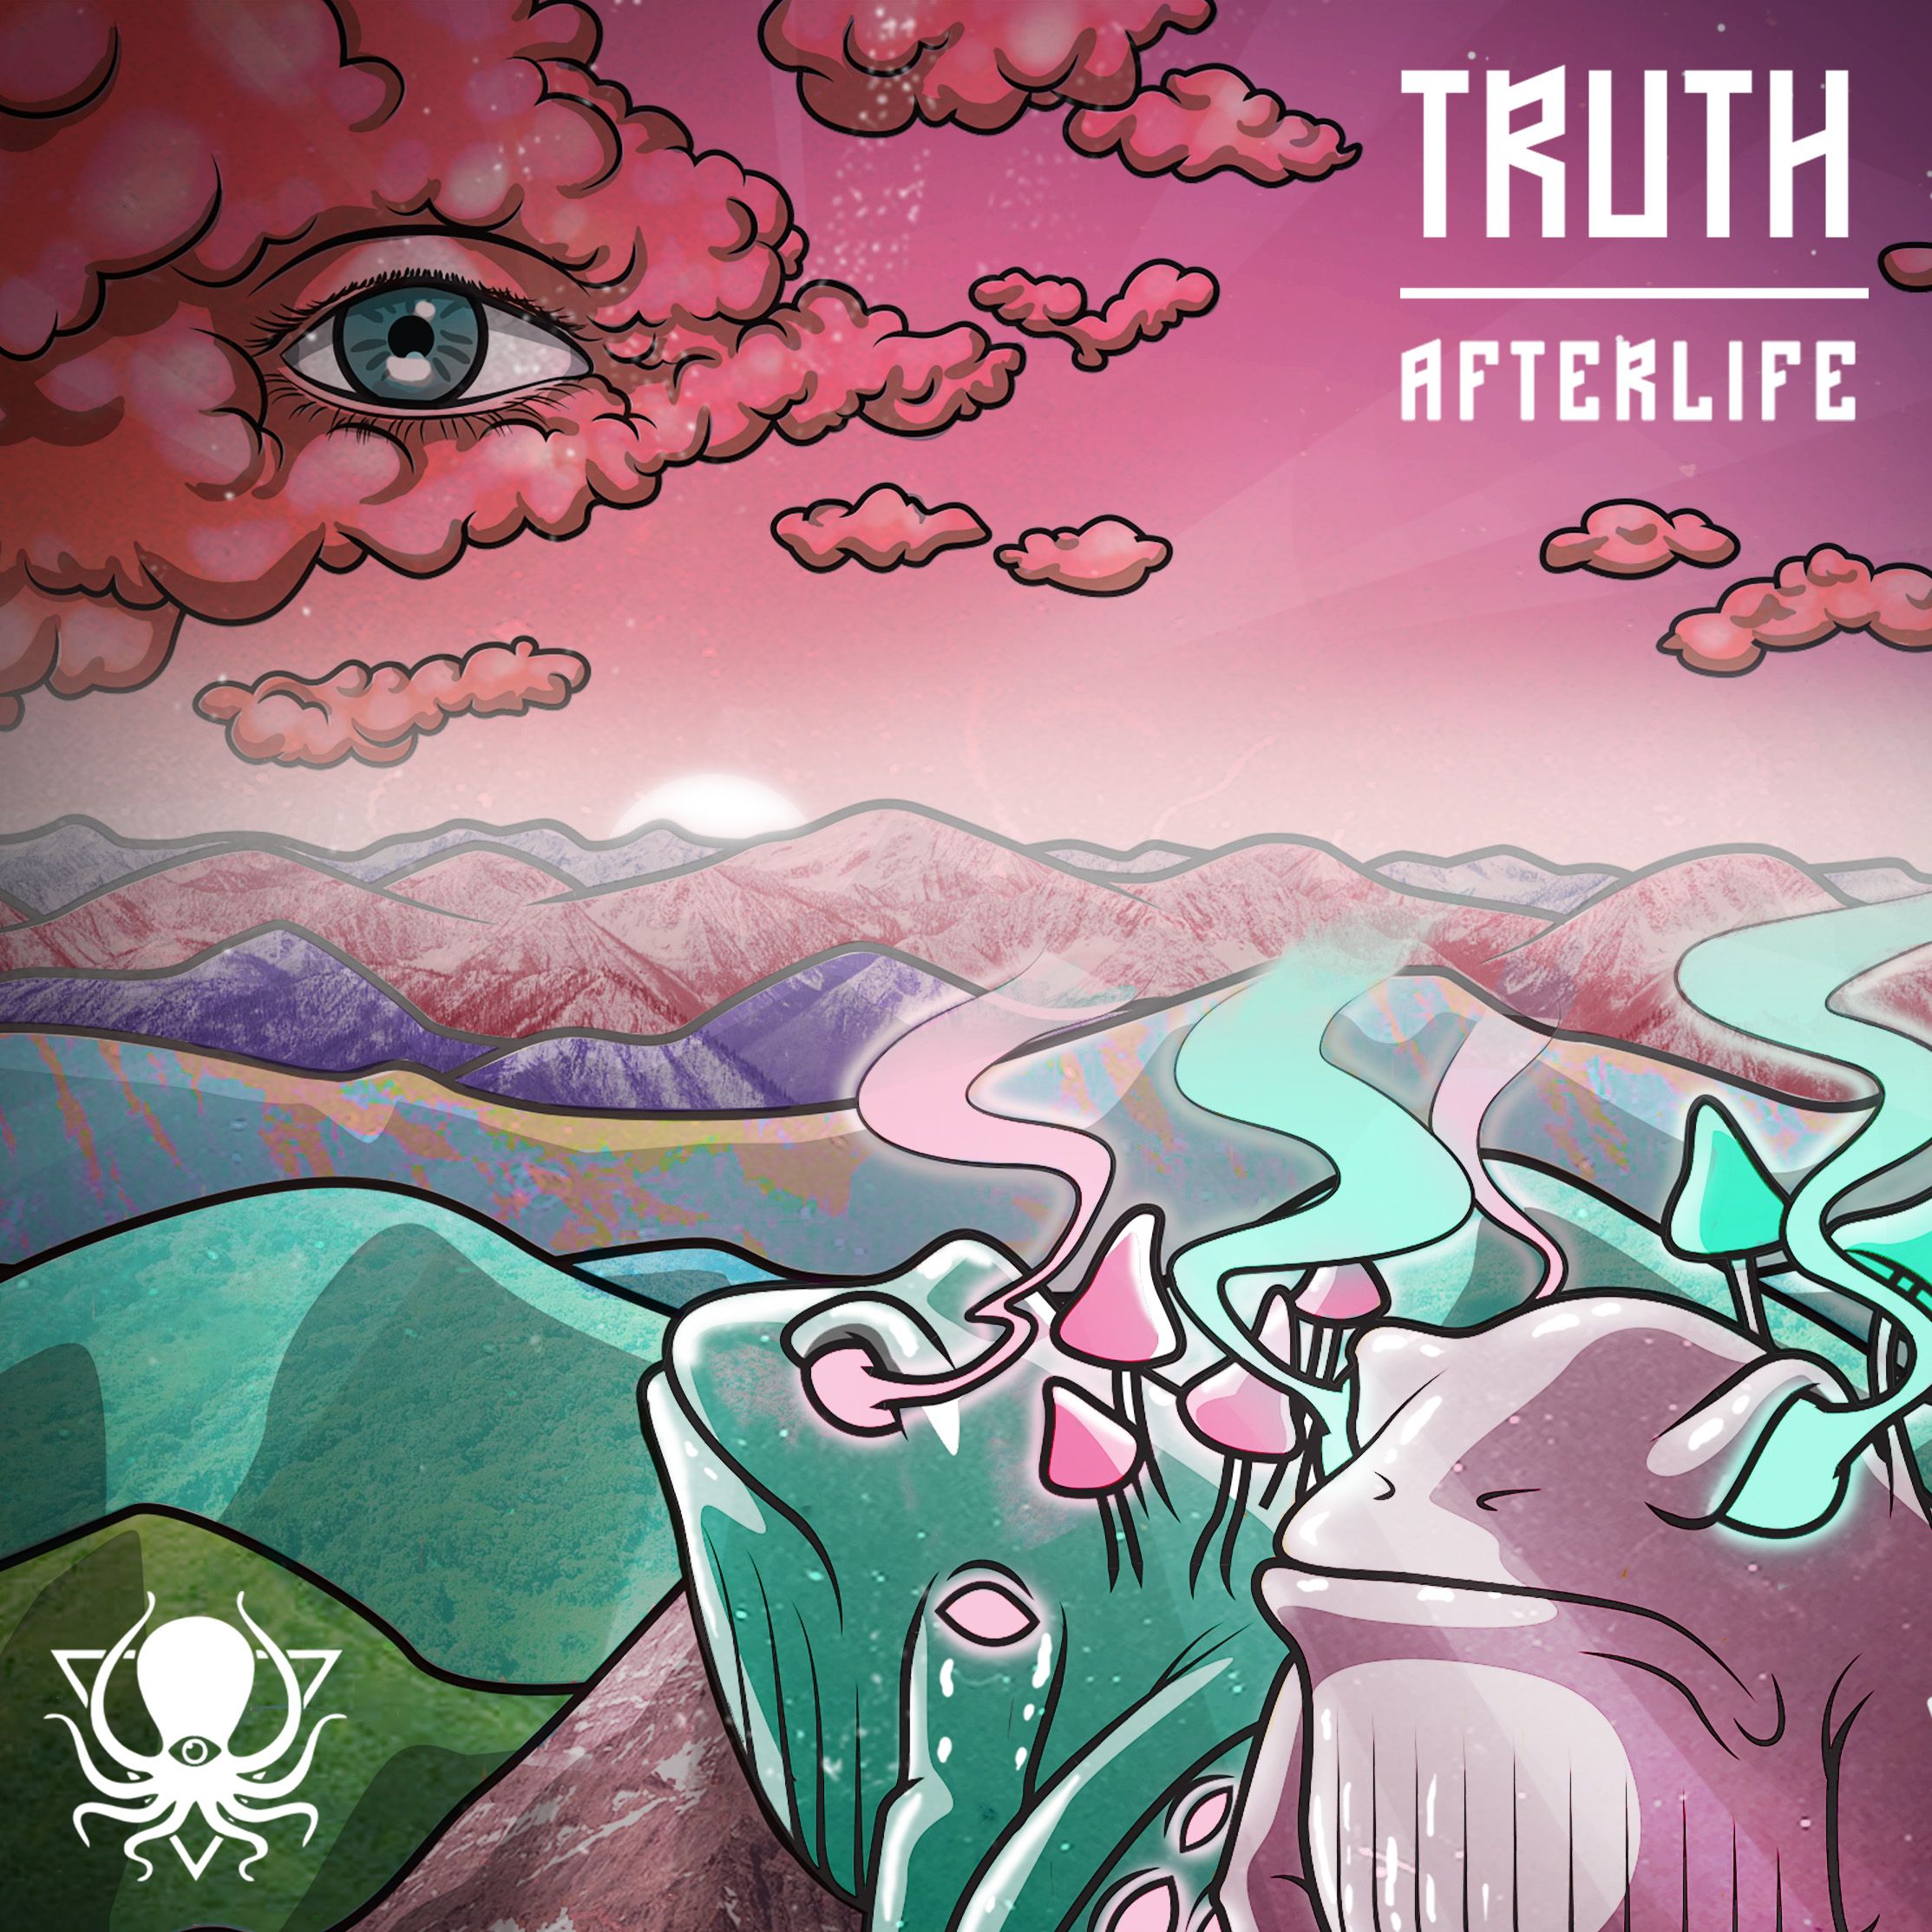 ဒေါင်းလုပ် Truth - Afterlife (DDD095)